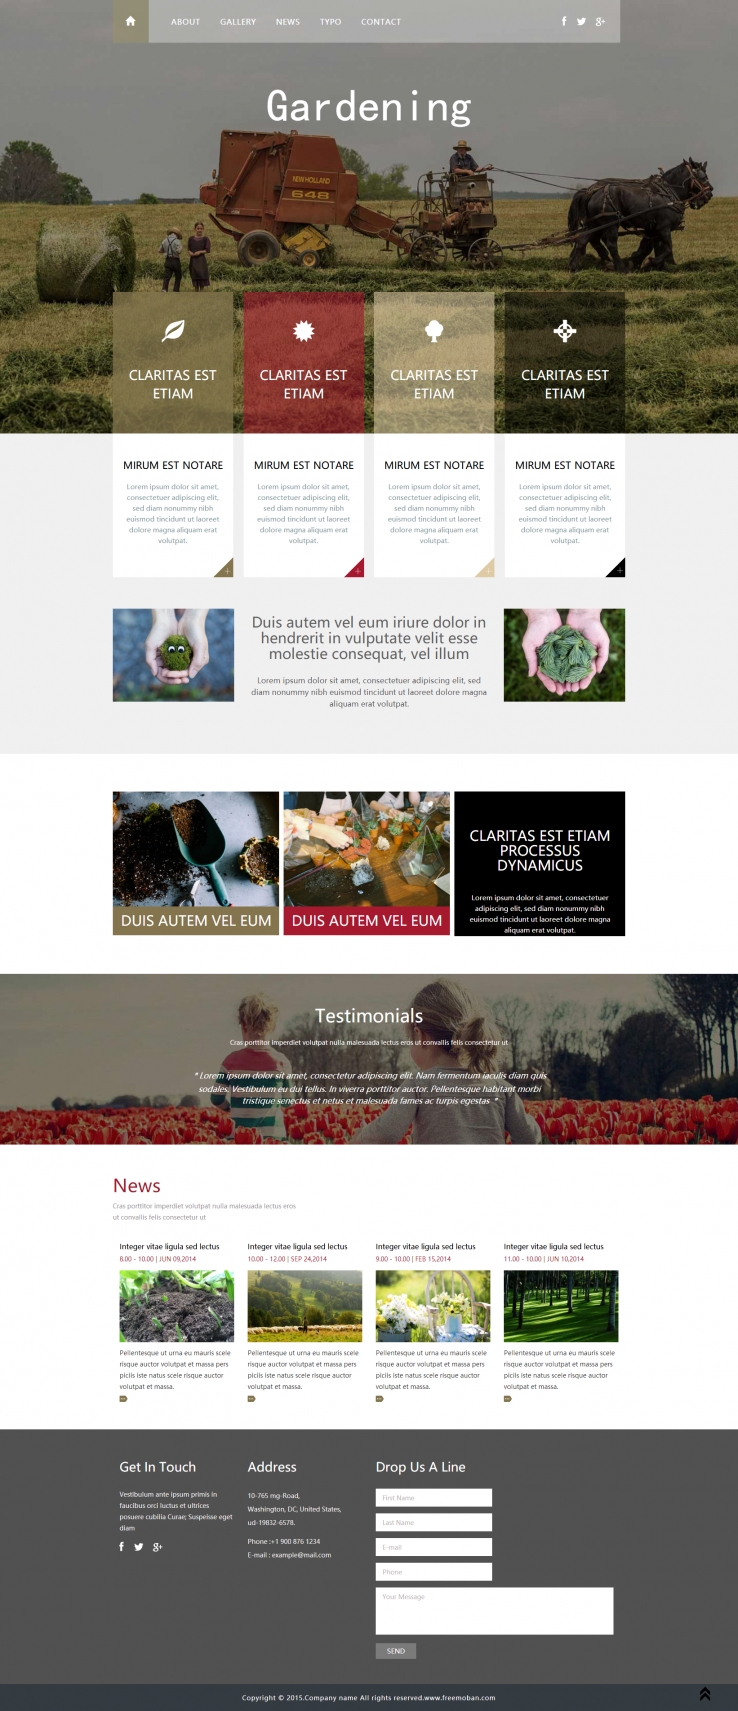 淡绿色大气风格的欧洲玫瑰农场网站模板下载